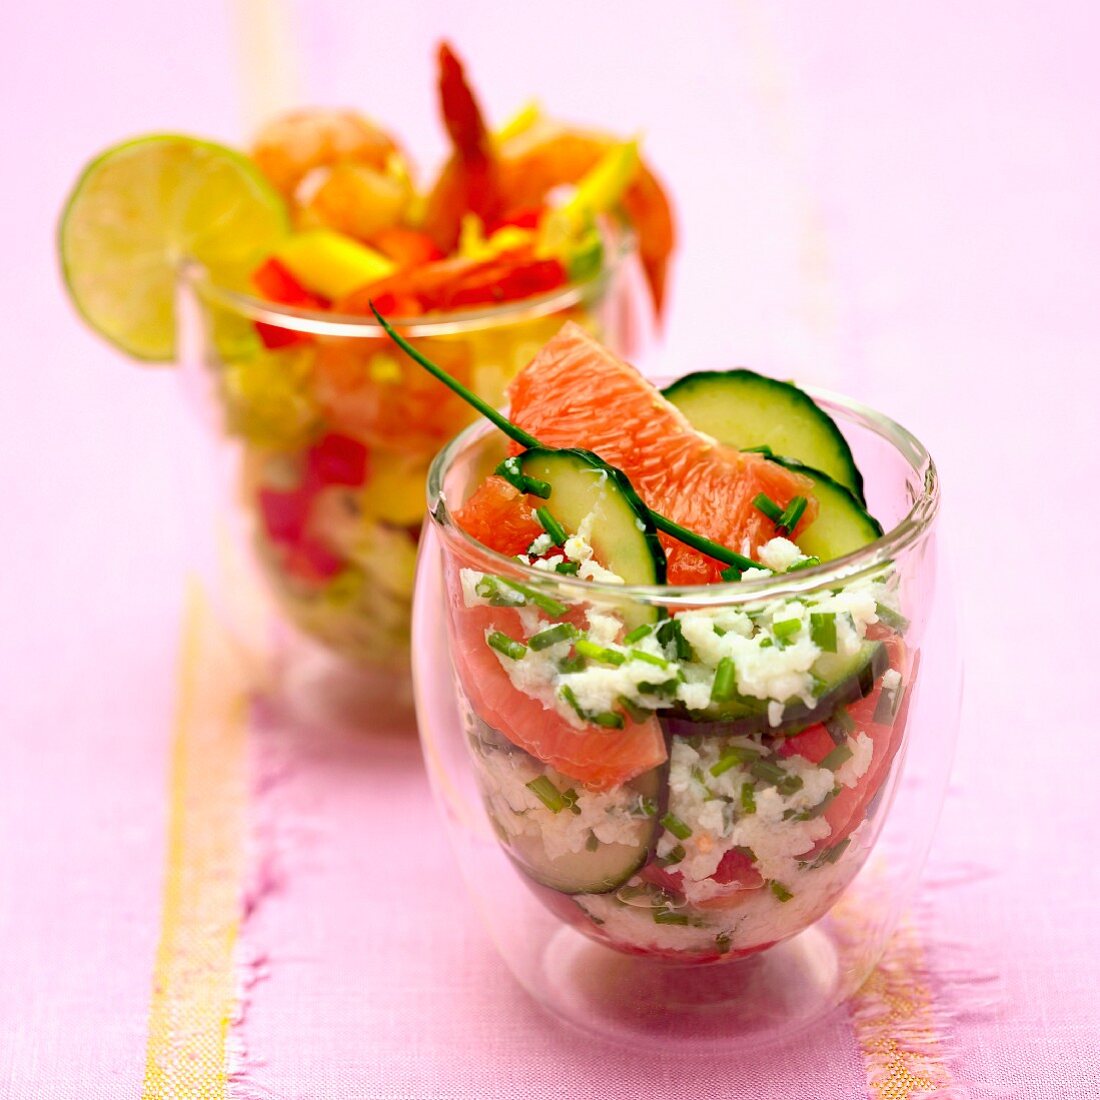 Krabben-Grapefruit-Salat und Garnelen-Mango-Salat, in Gläsern serviert